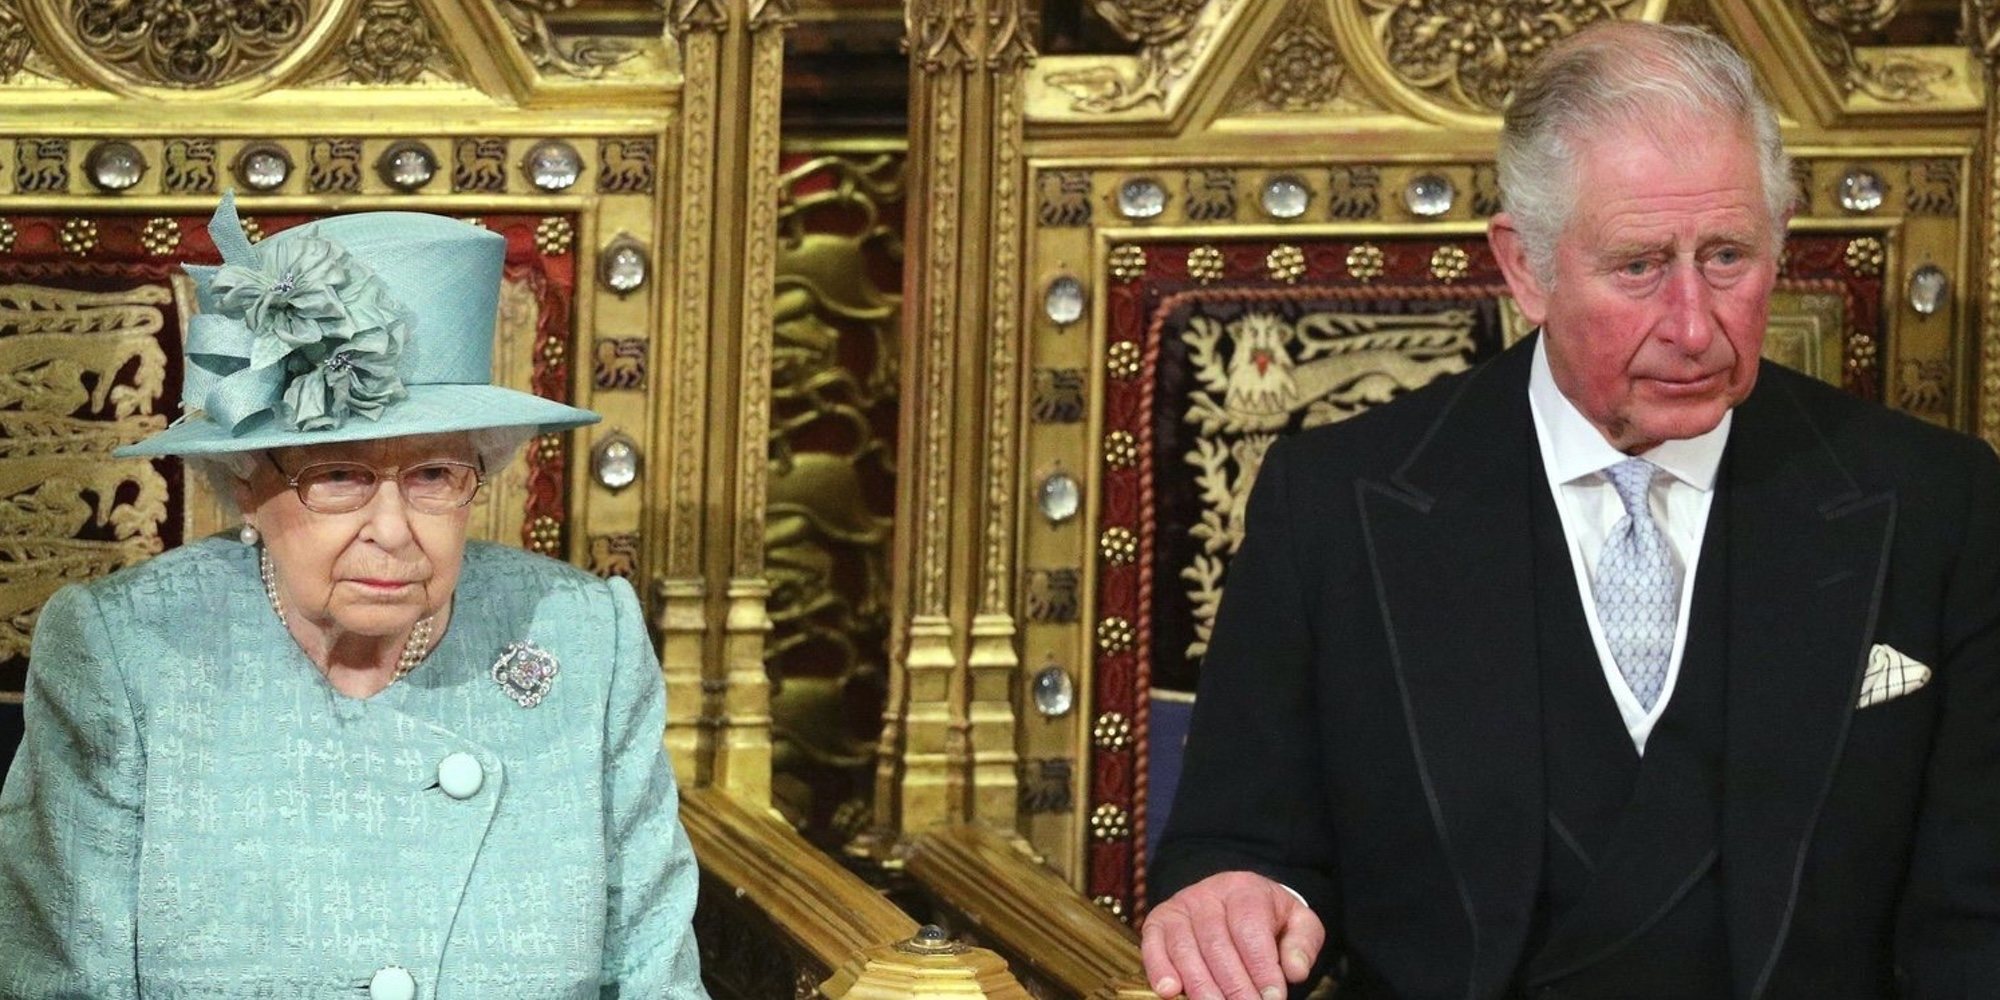 La Reina Isabel y el Príncipe Carlos tienen pendiente una reunión urgente para hablar del Príncipe Andrés